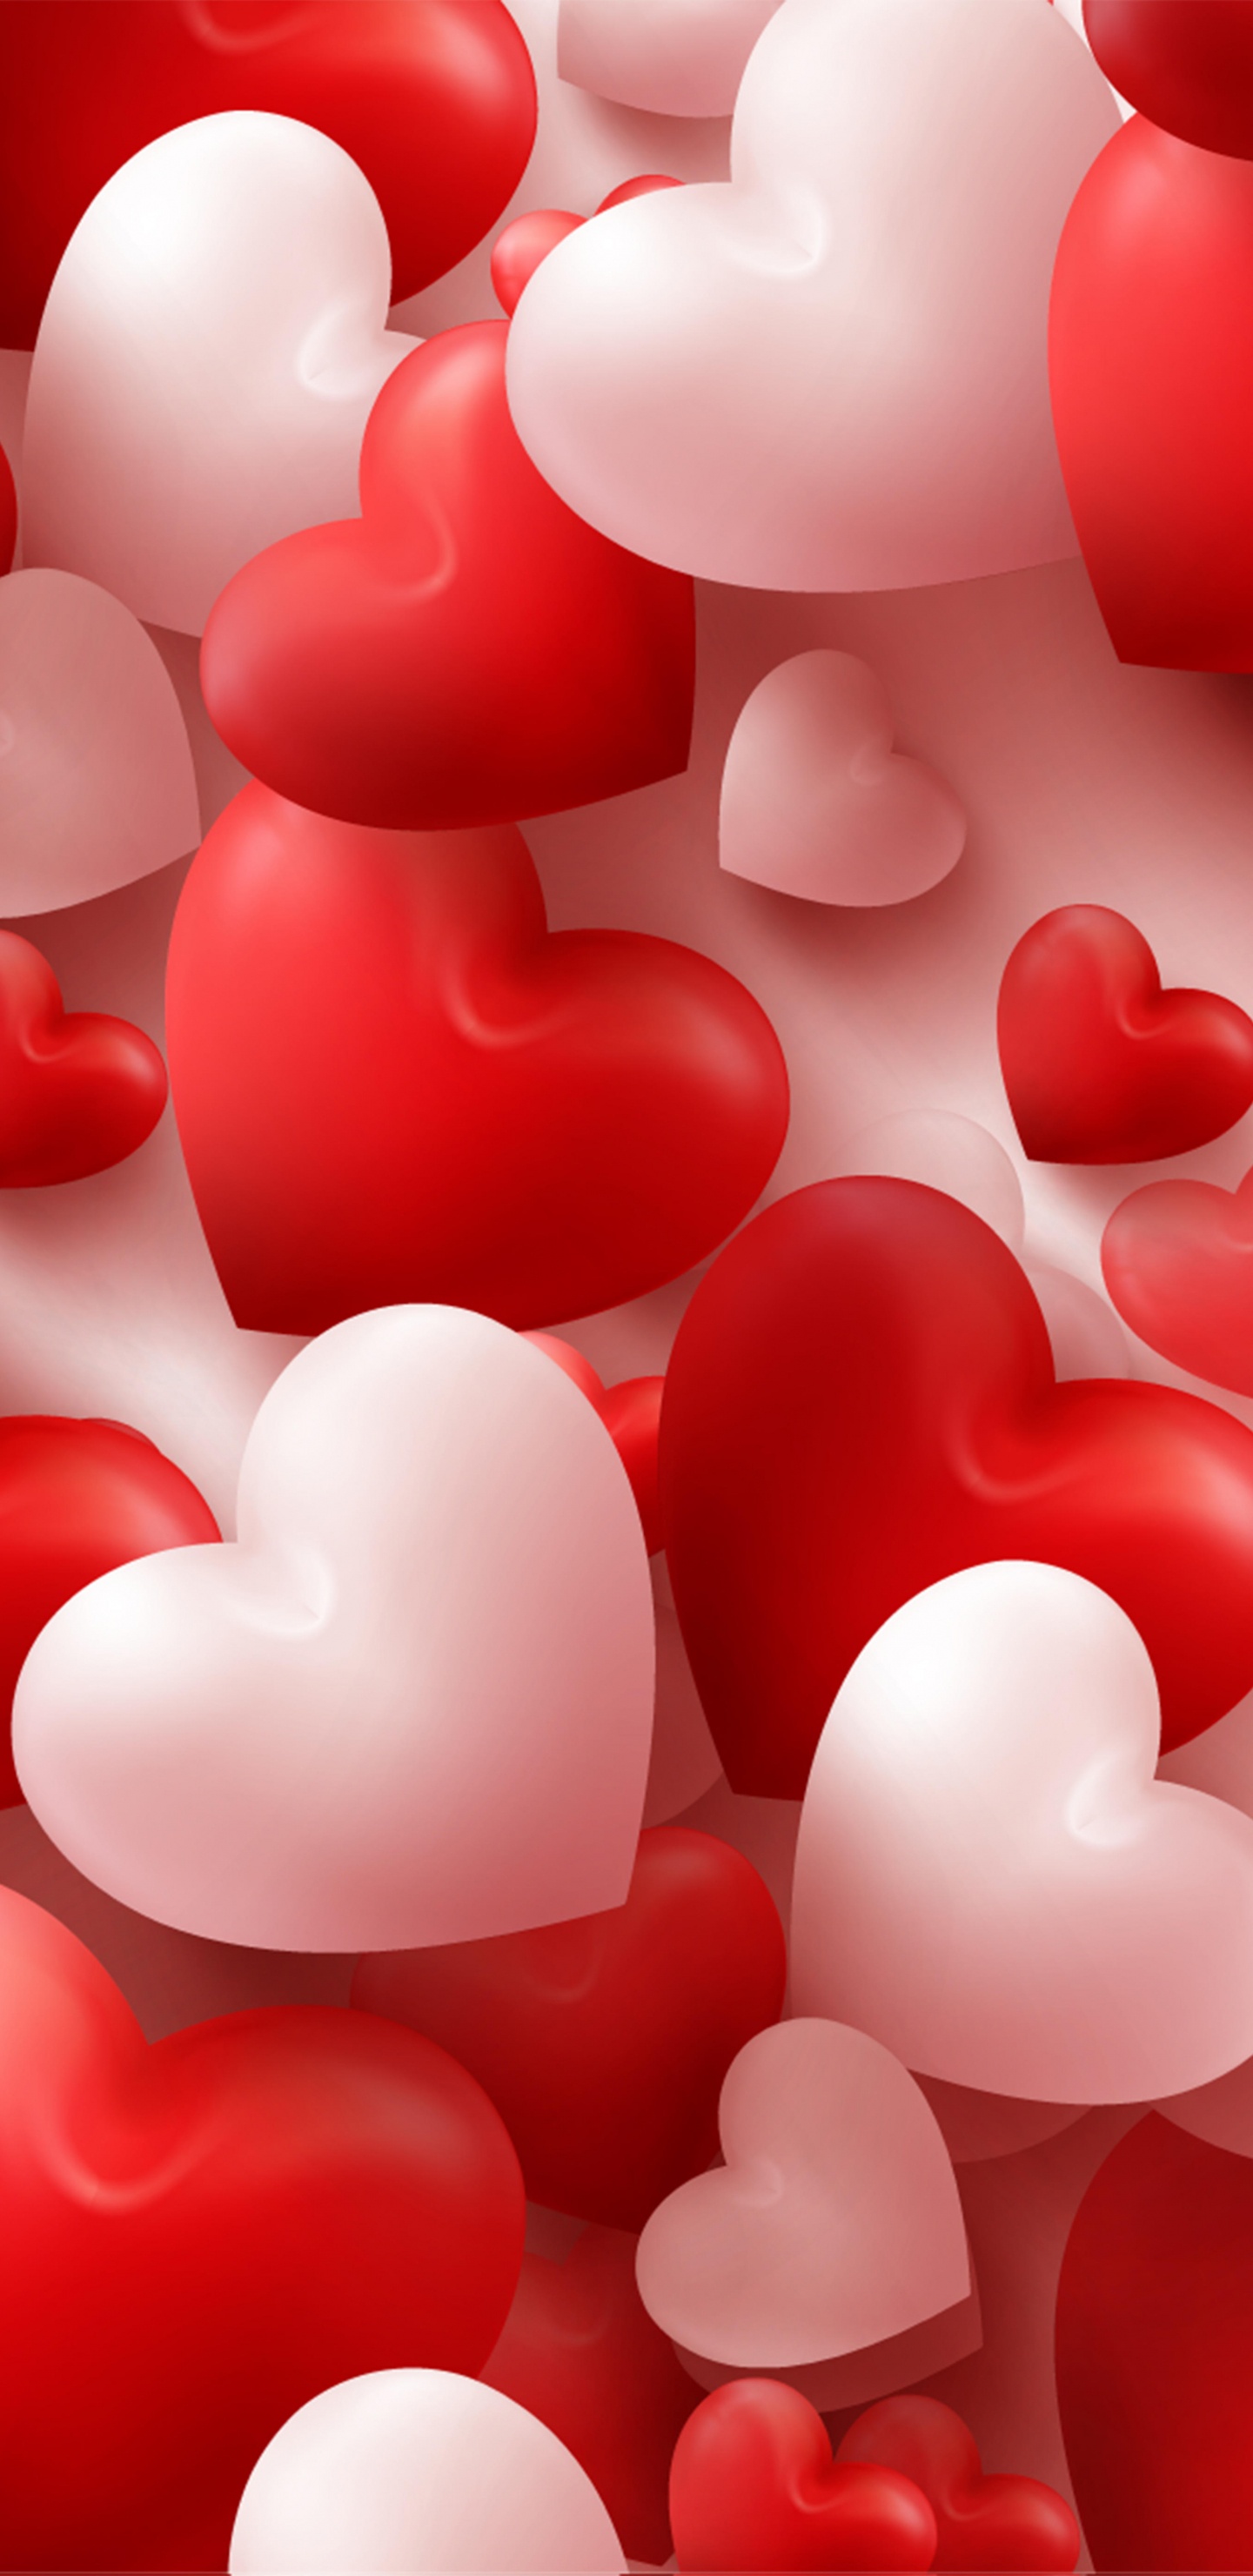 el Día de San Valentín, Coraz, Rojo, Amor, Rosa. Wallpaper in 1440x2960 Resolution